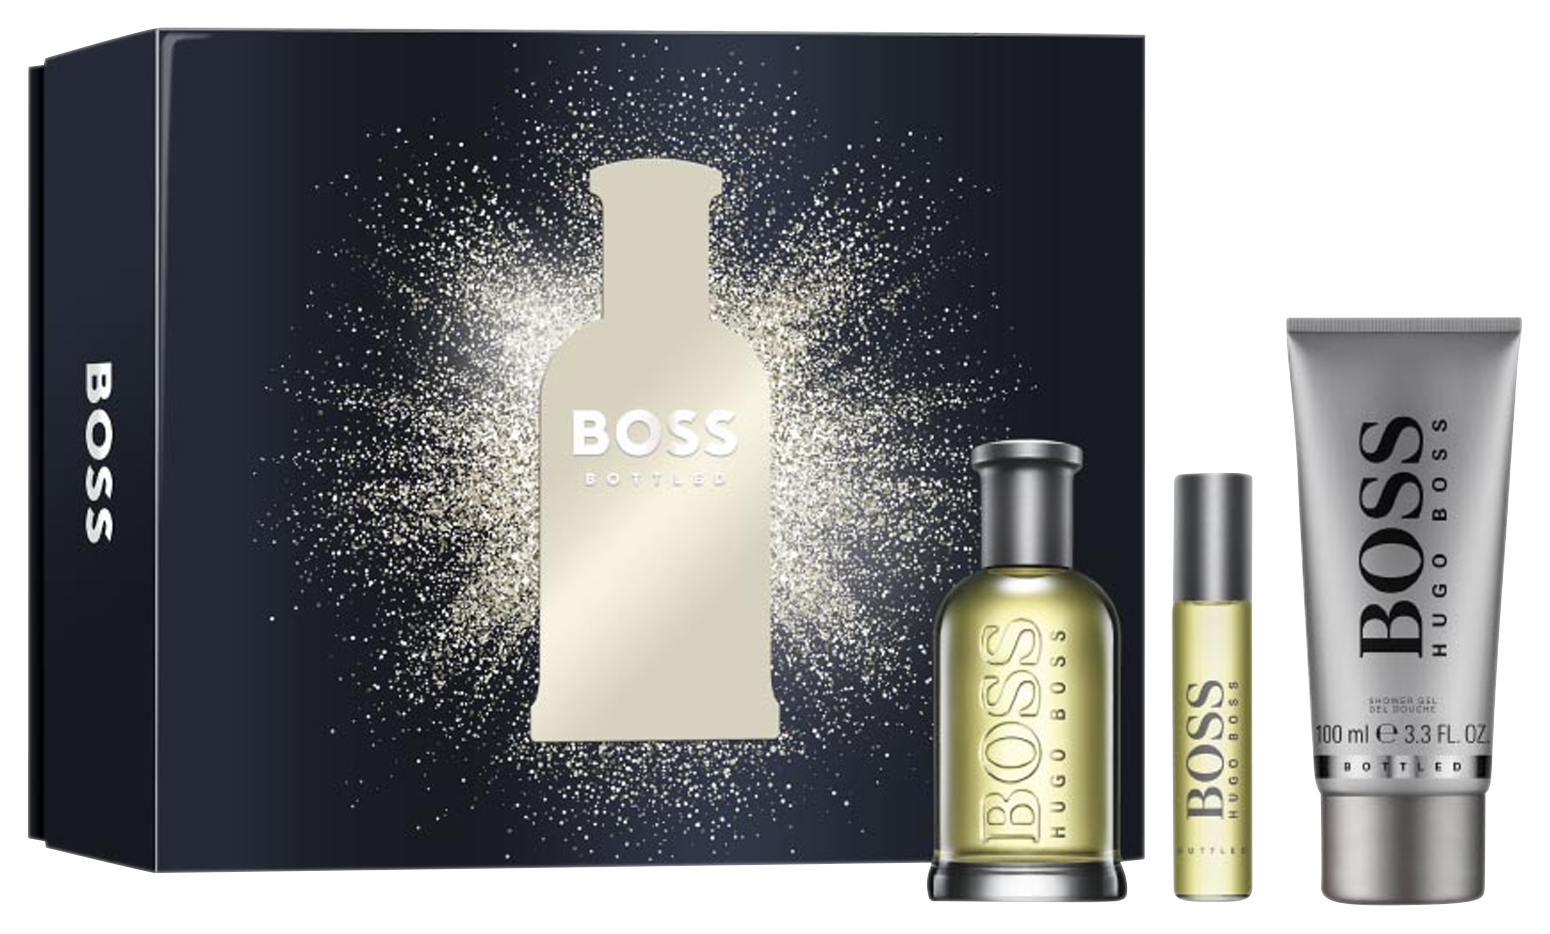 Boss Bottled Set, EDTS 100 ml + EDPS 10 ml + Shower Gel 100 ml